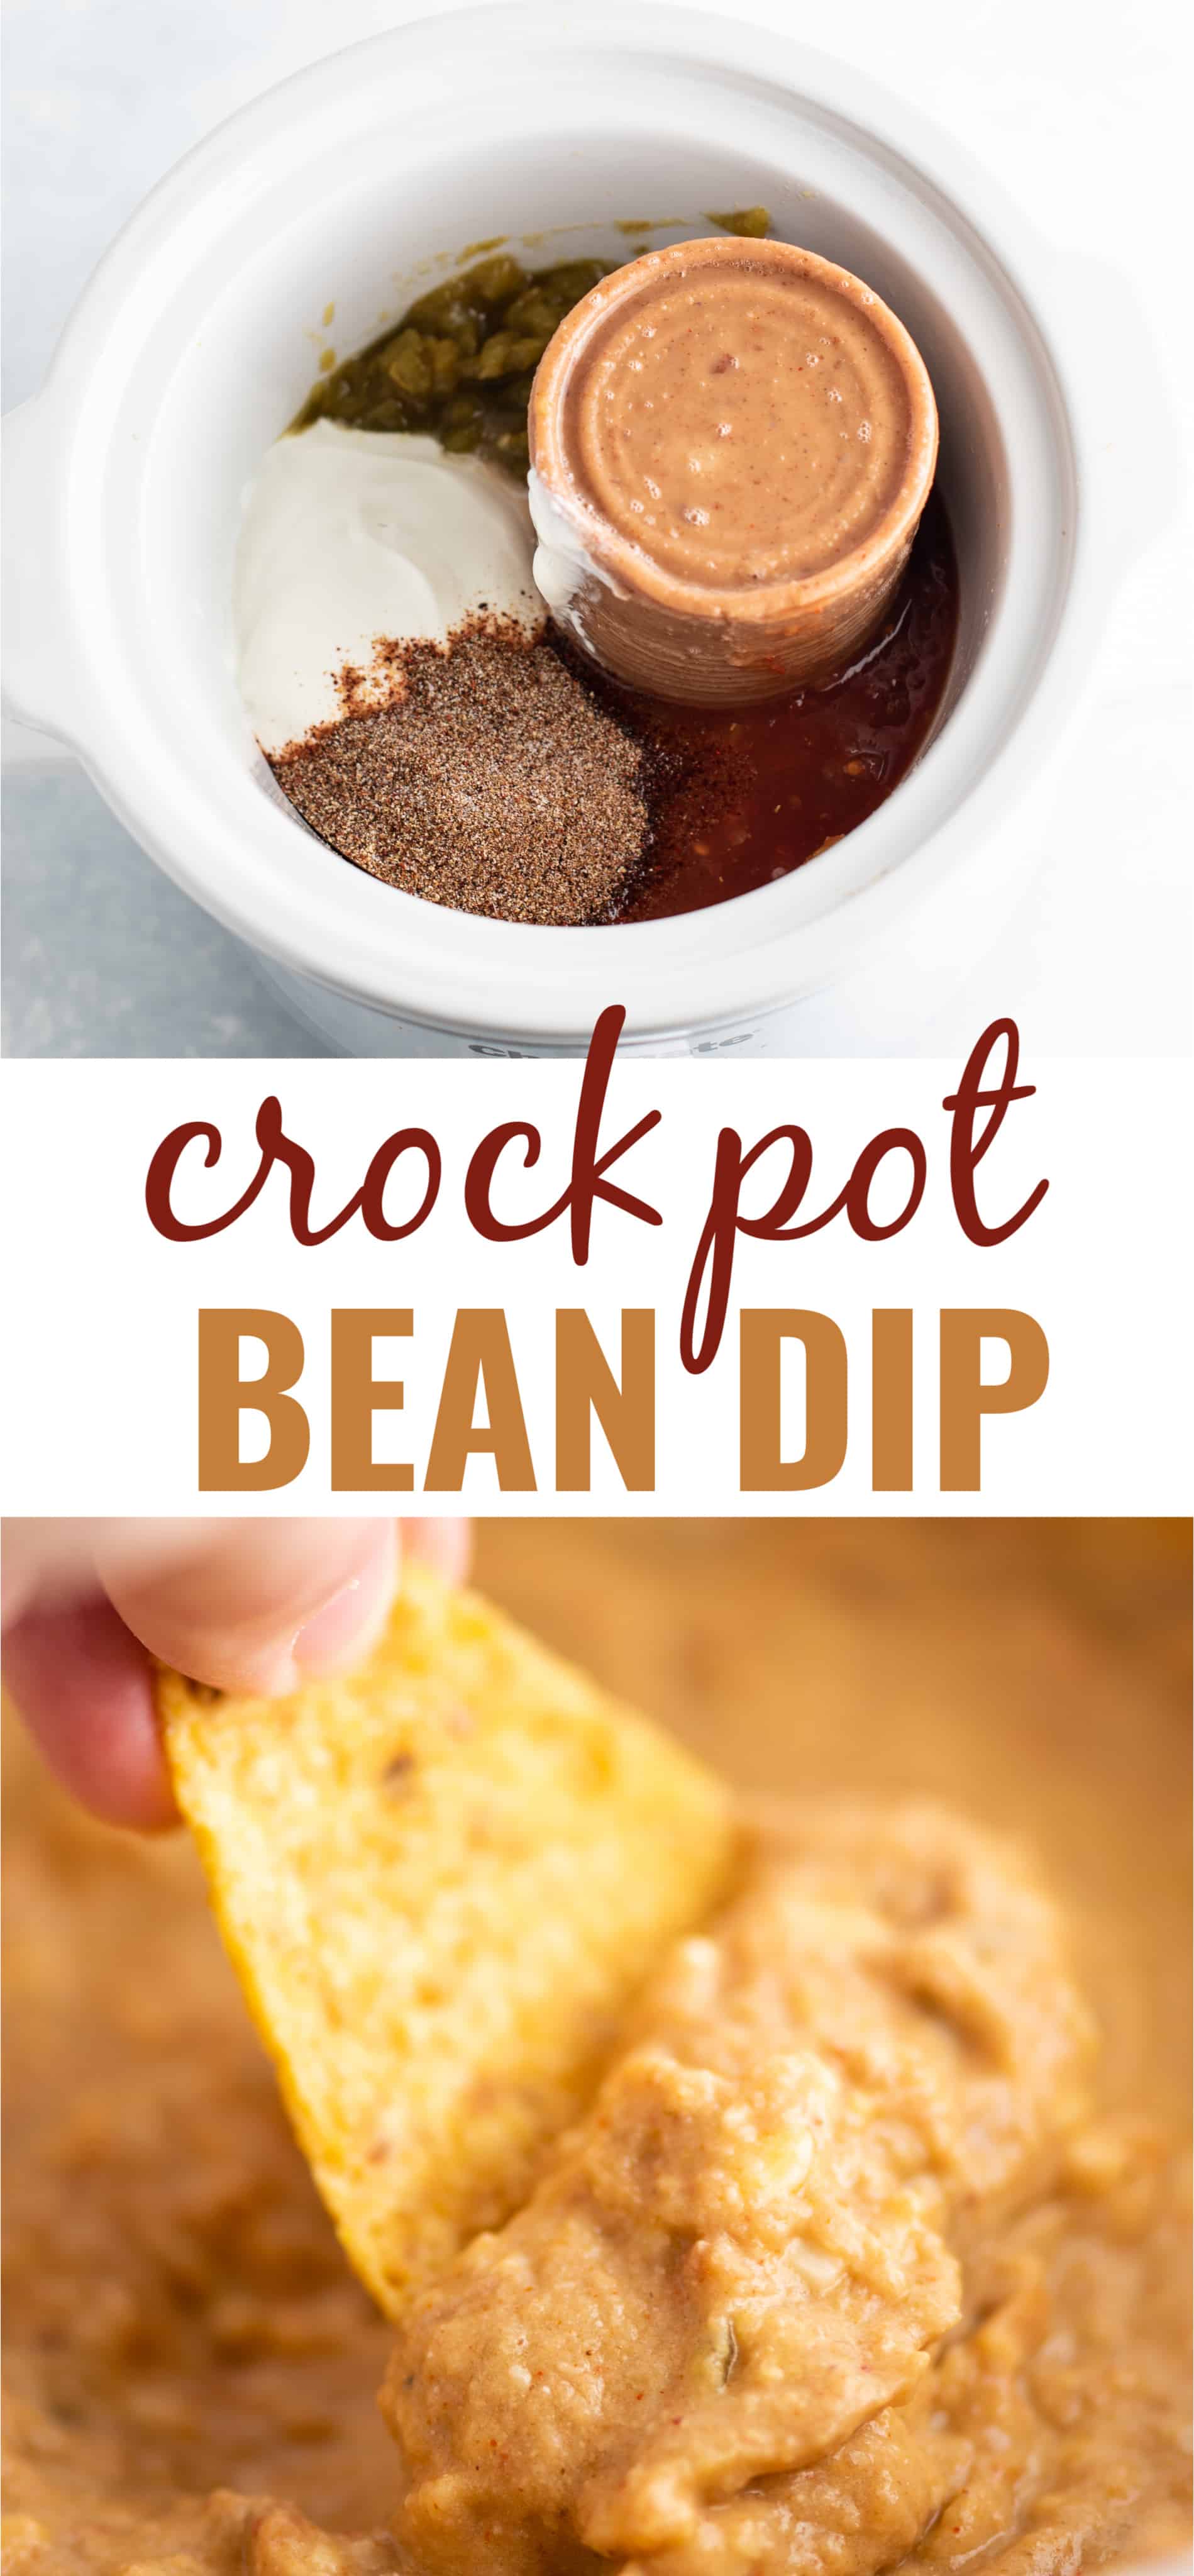 image with the text "crock pot bean dip"